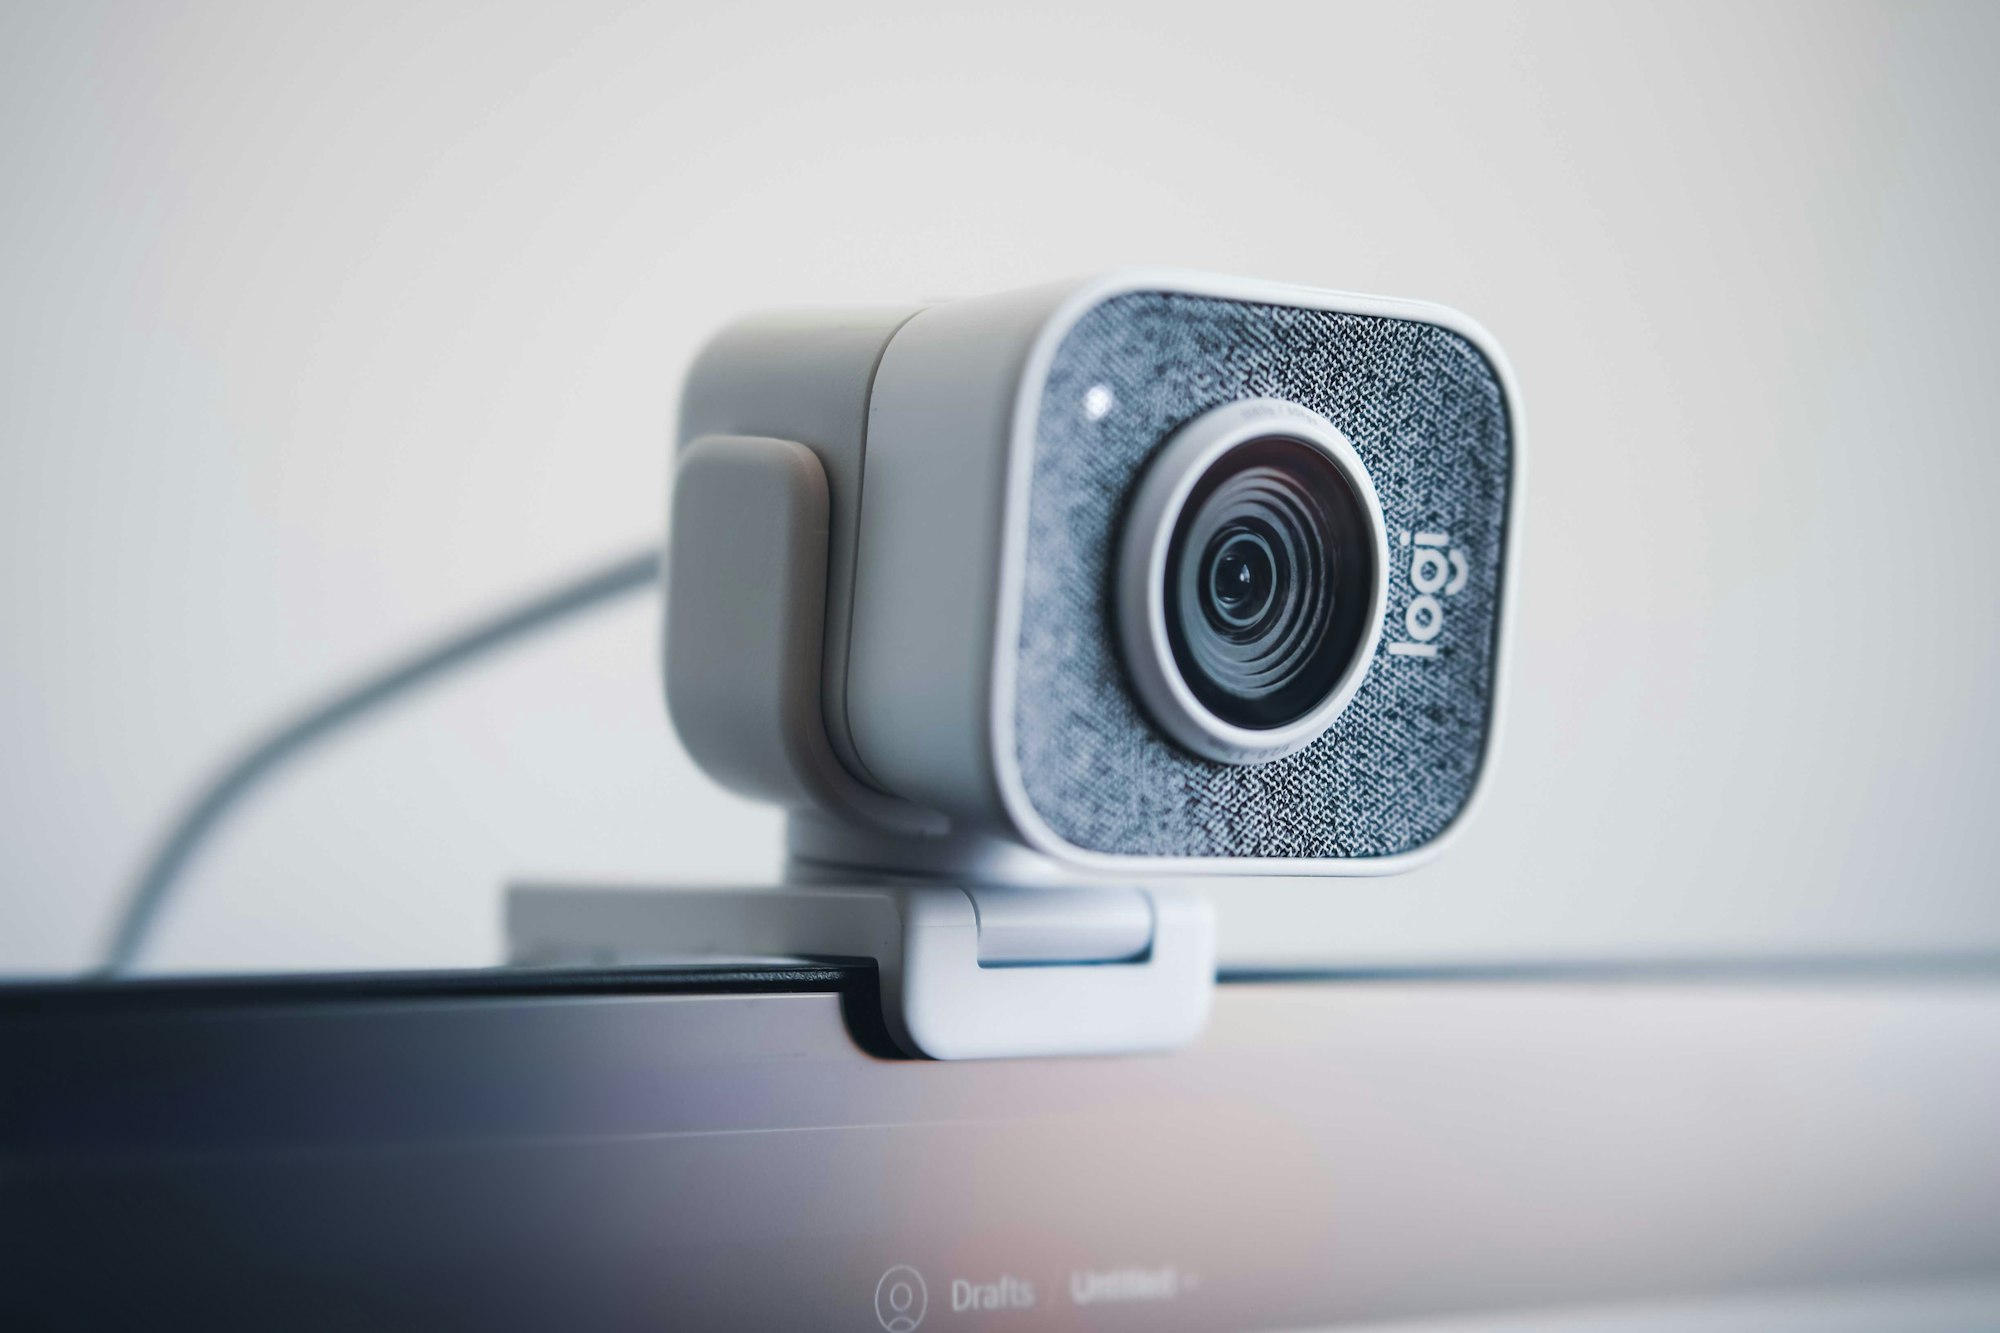 Laptop-Kamera abkleben: Schützt das die Privatsphäre?